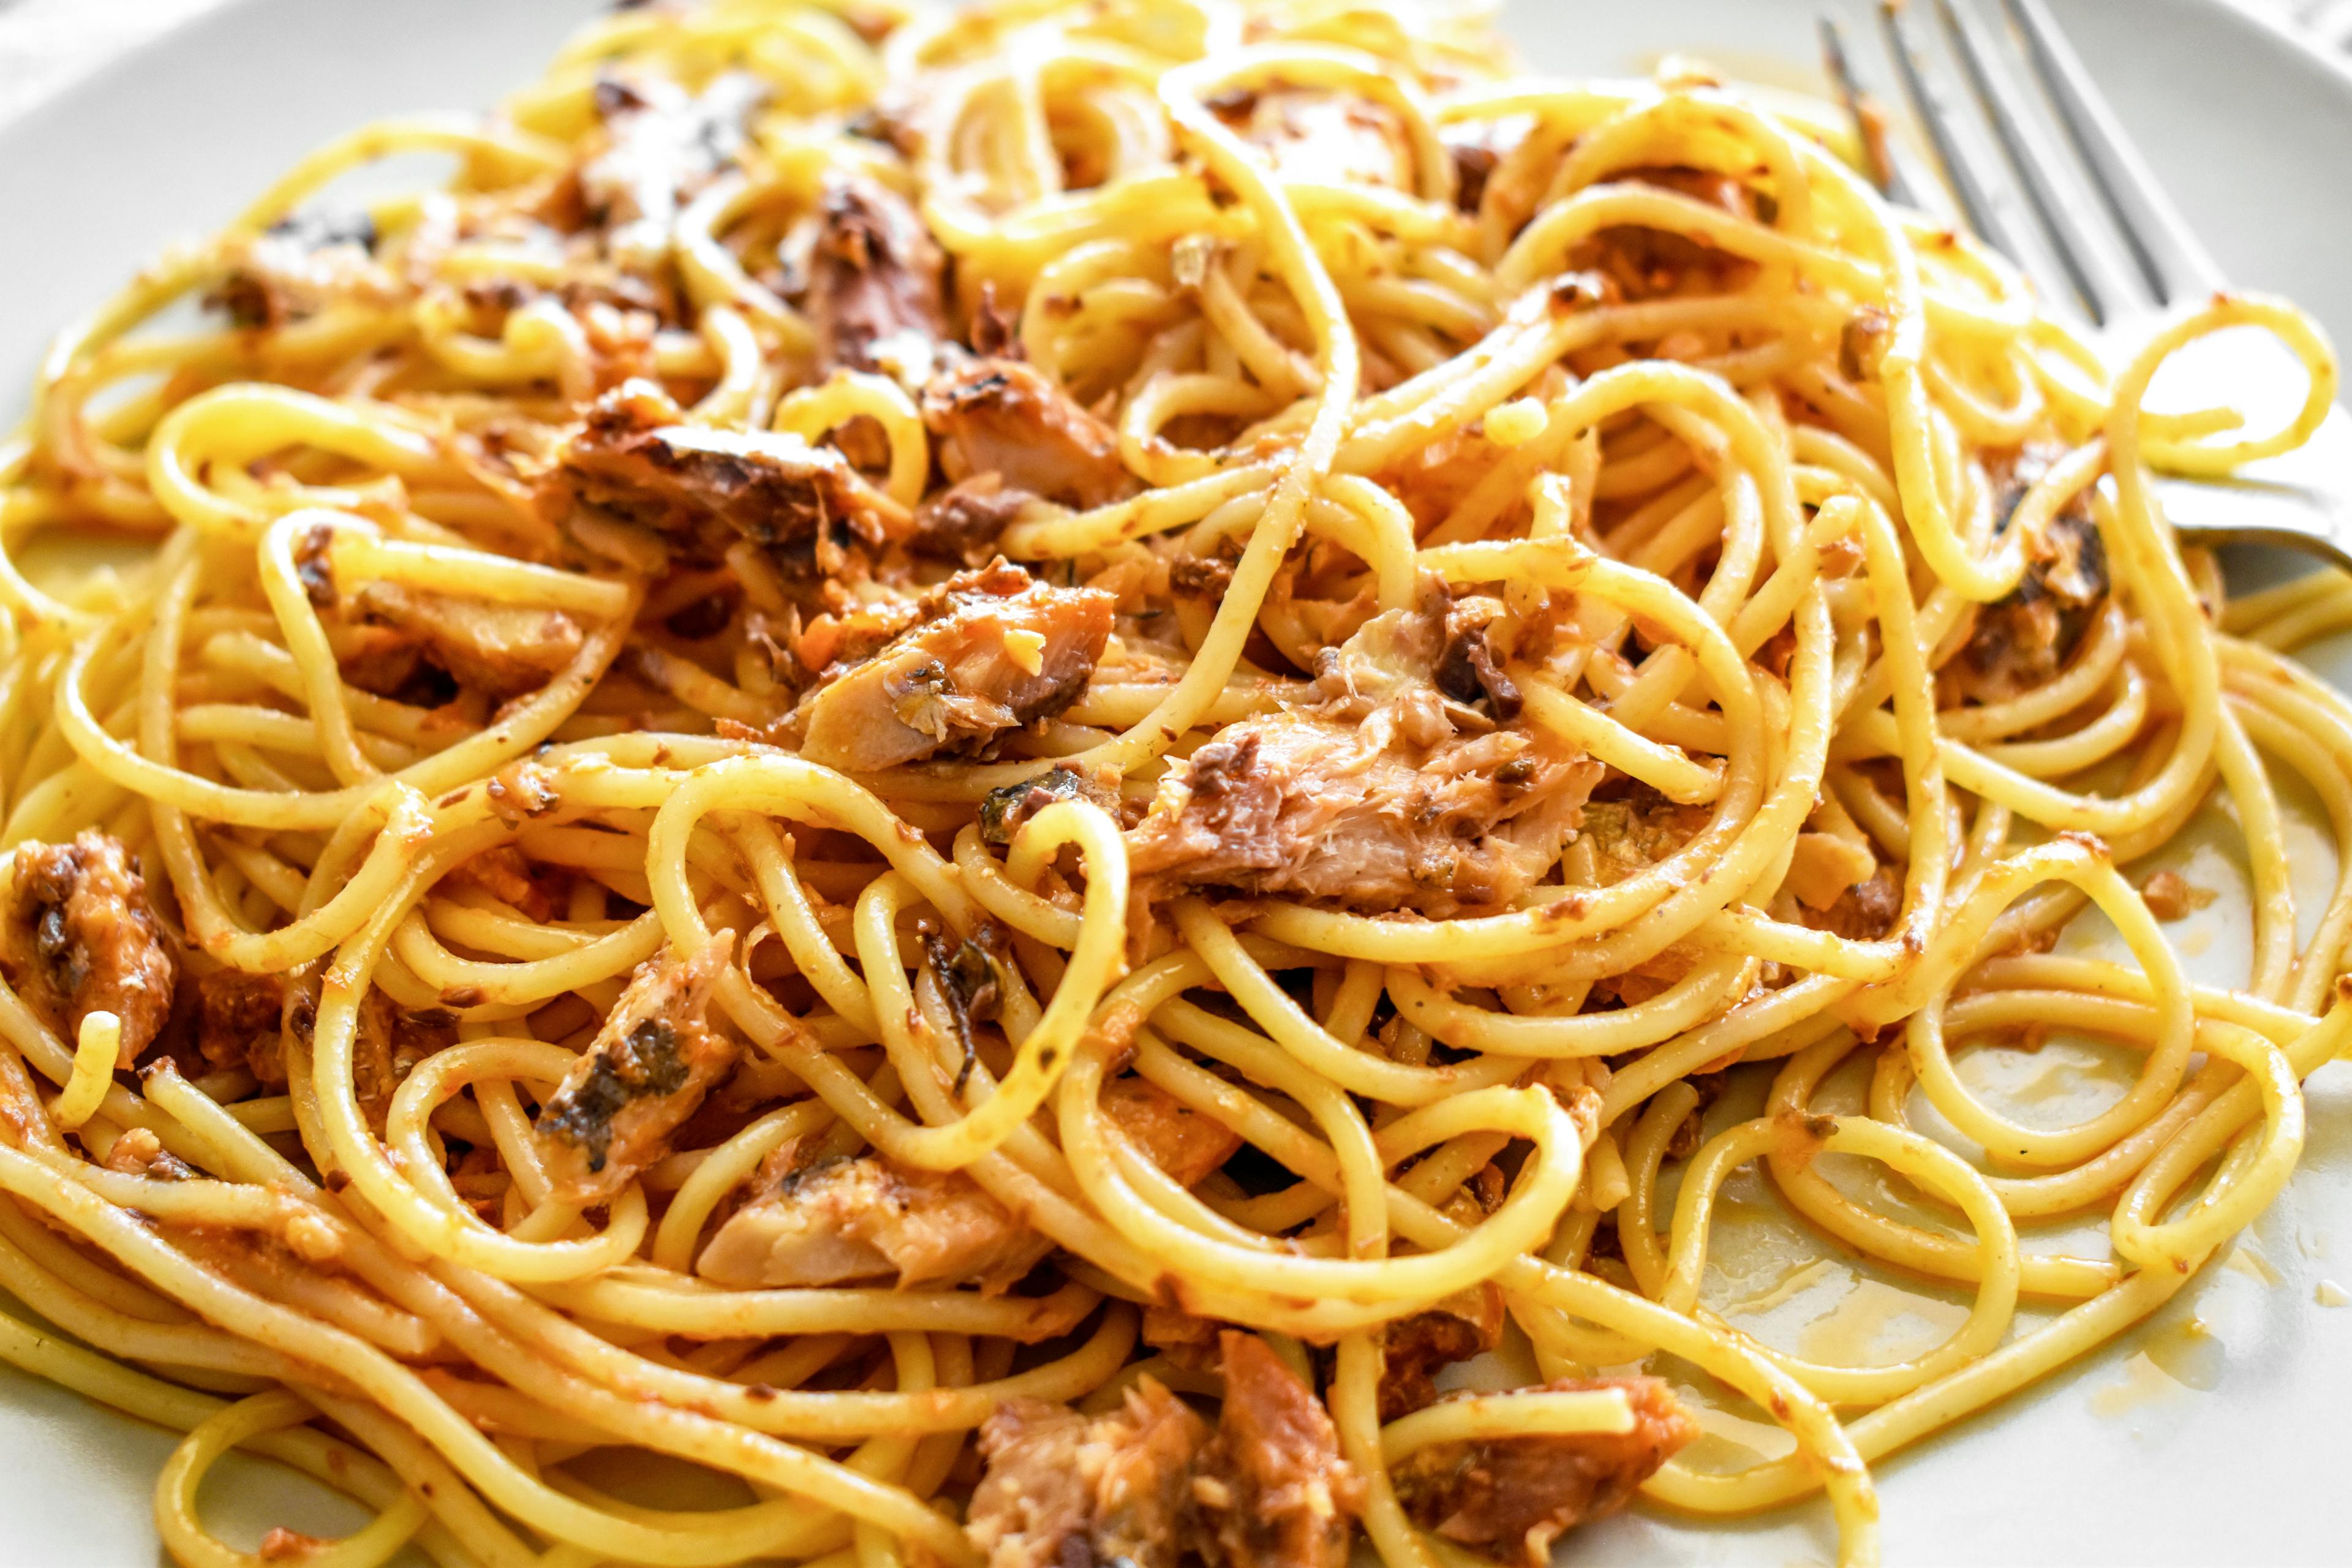 Plate with spaghetti alla bolognese